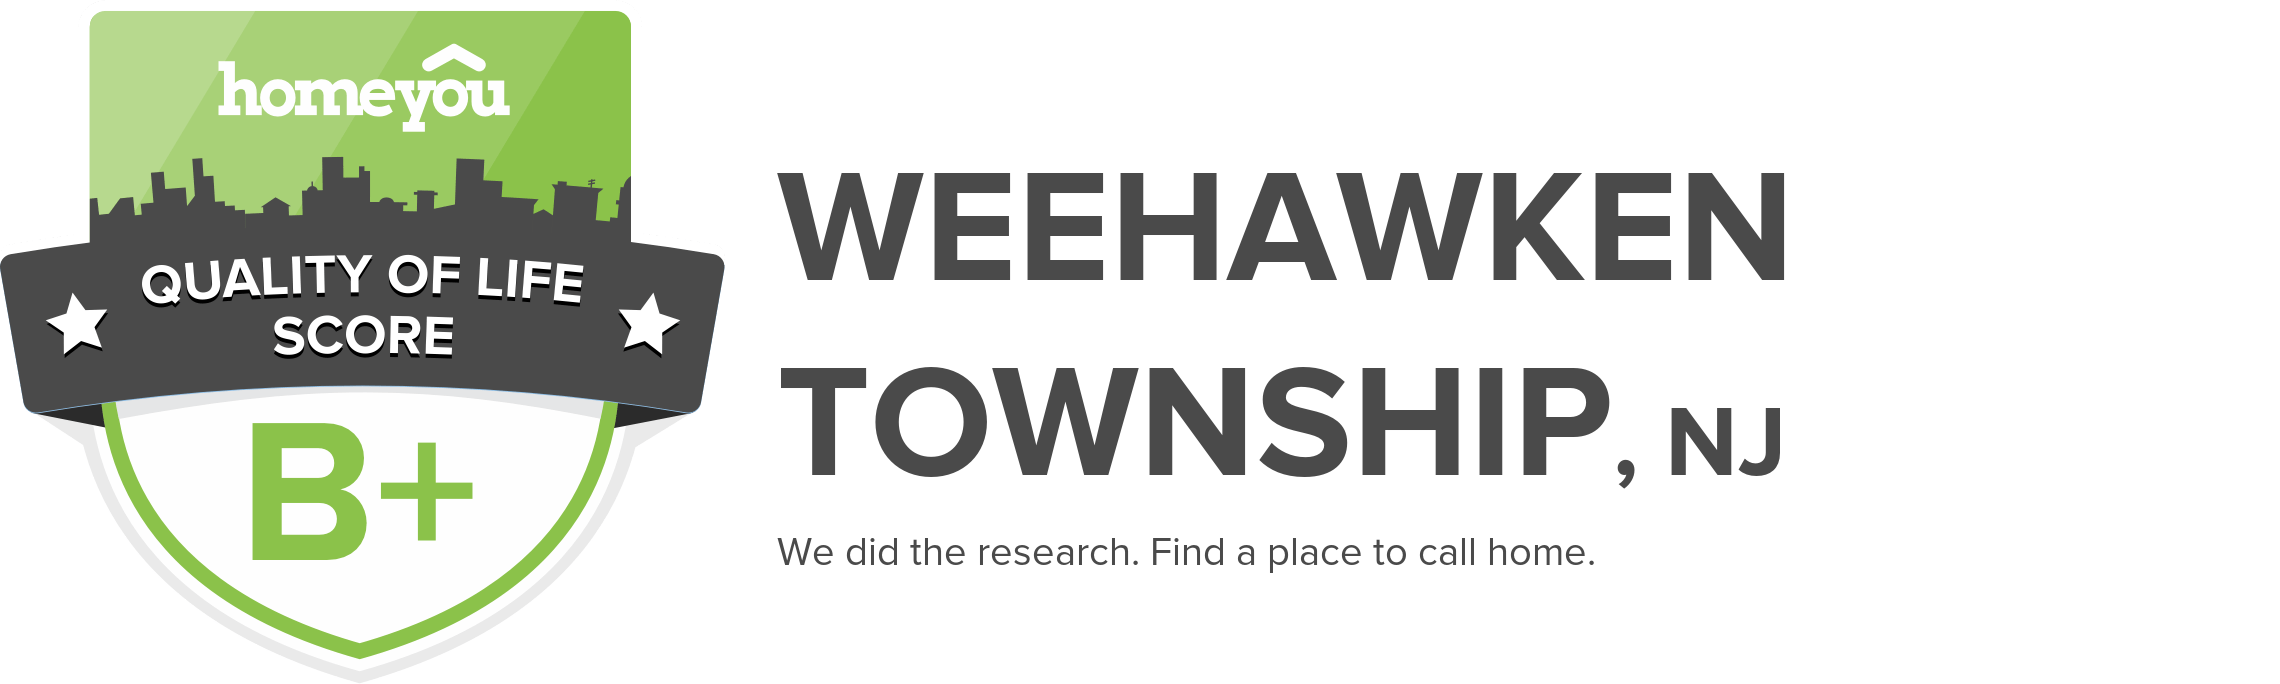 Weehawken Township, NJ